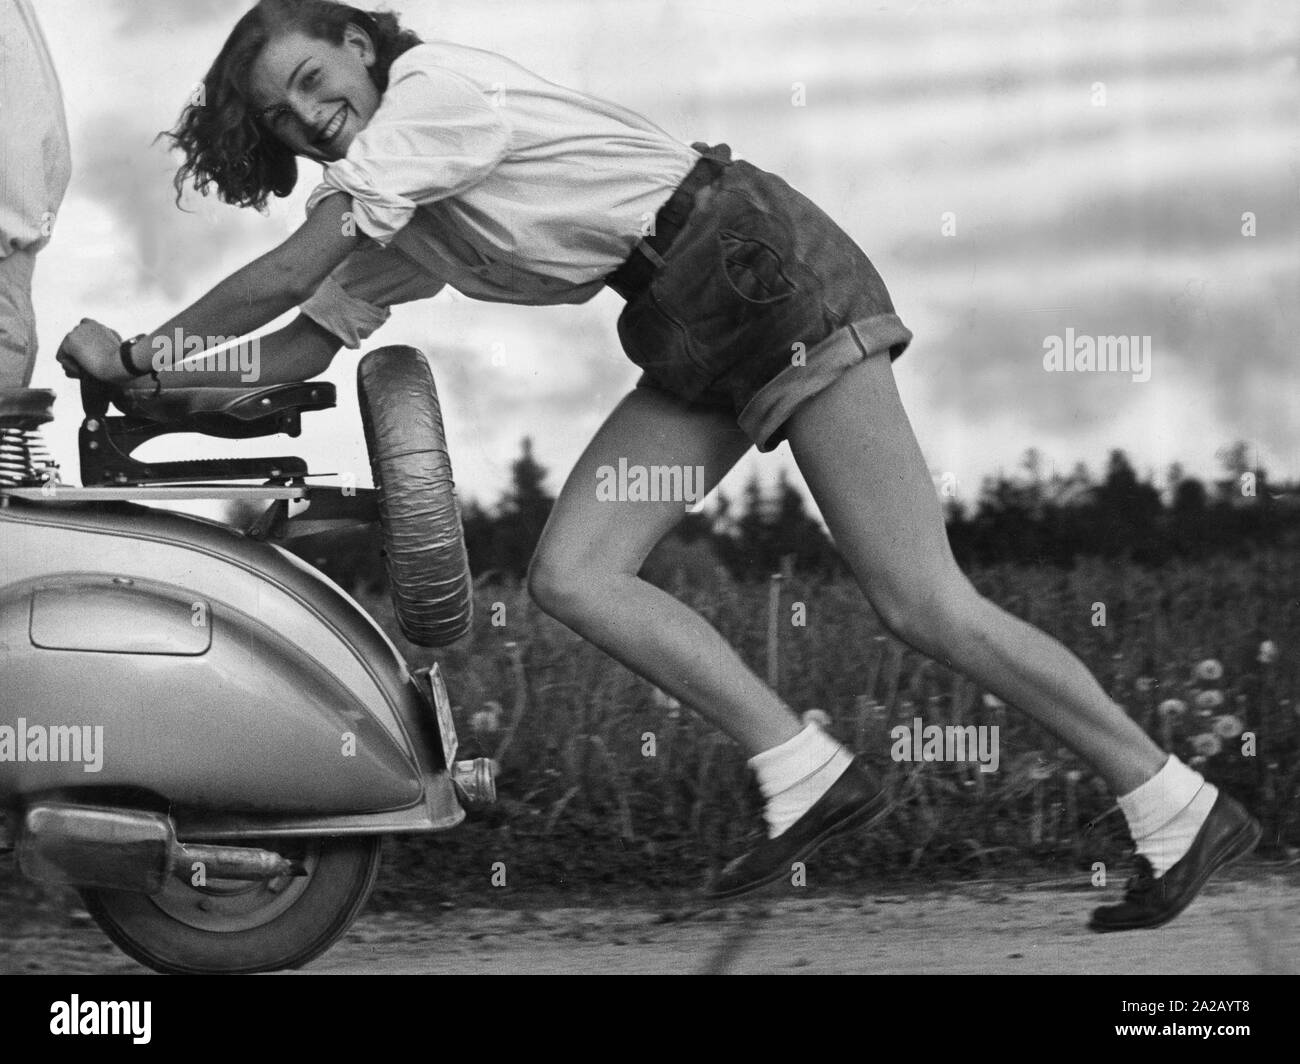 Ein Mädchen in kurzen Lederhosen lacht, während sie einen Roller  Stockfotografie - Alamy